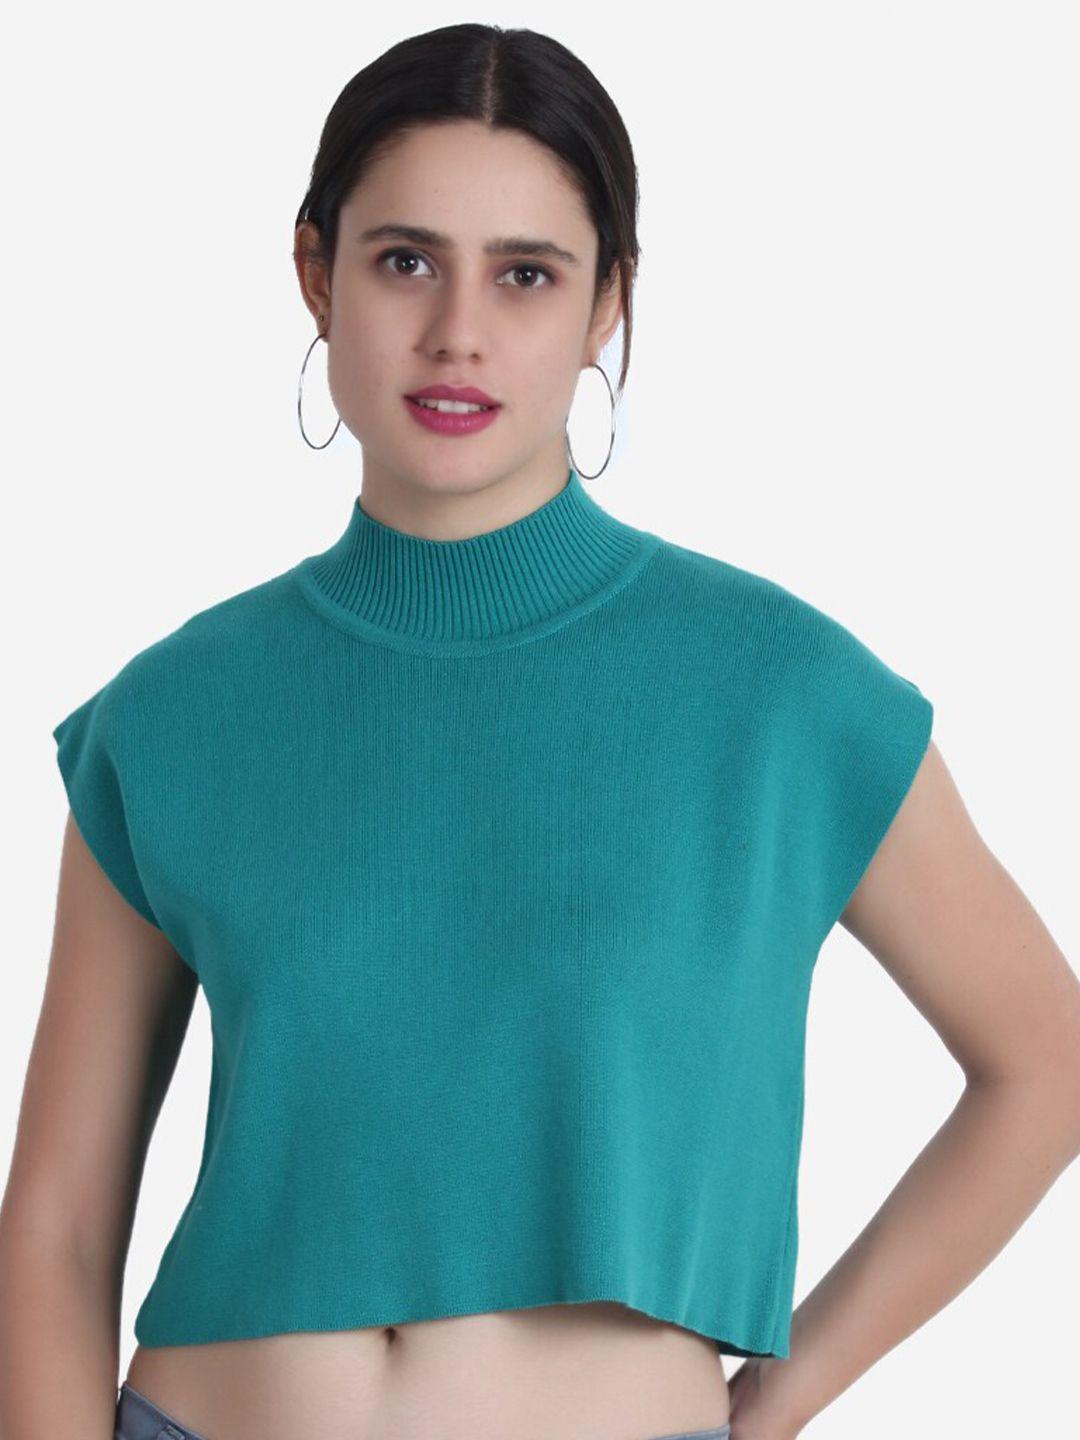 joe-hazel-women-crop-acrylic-pullover